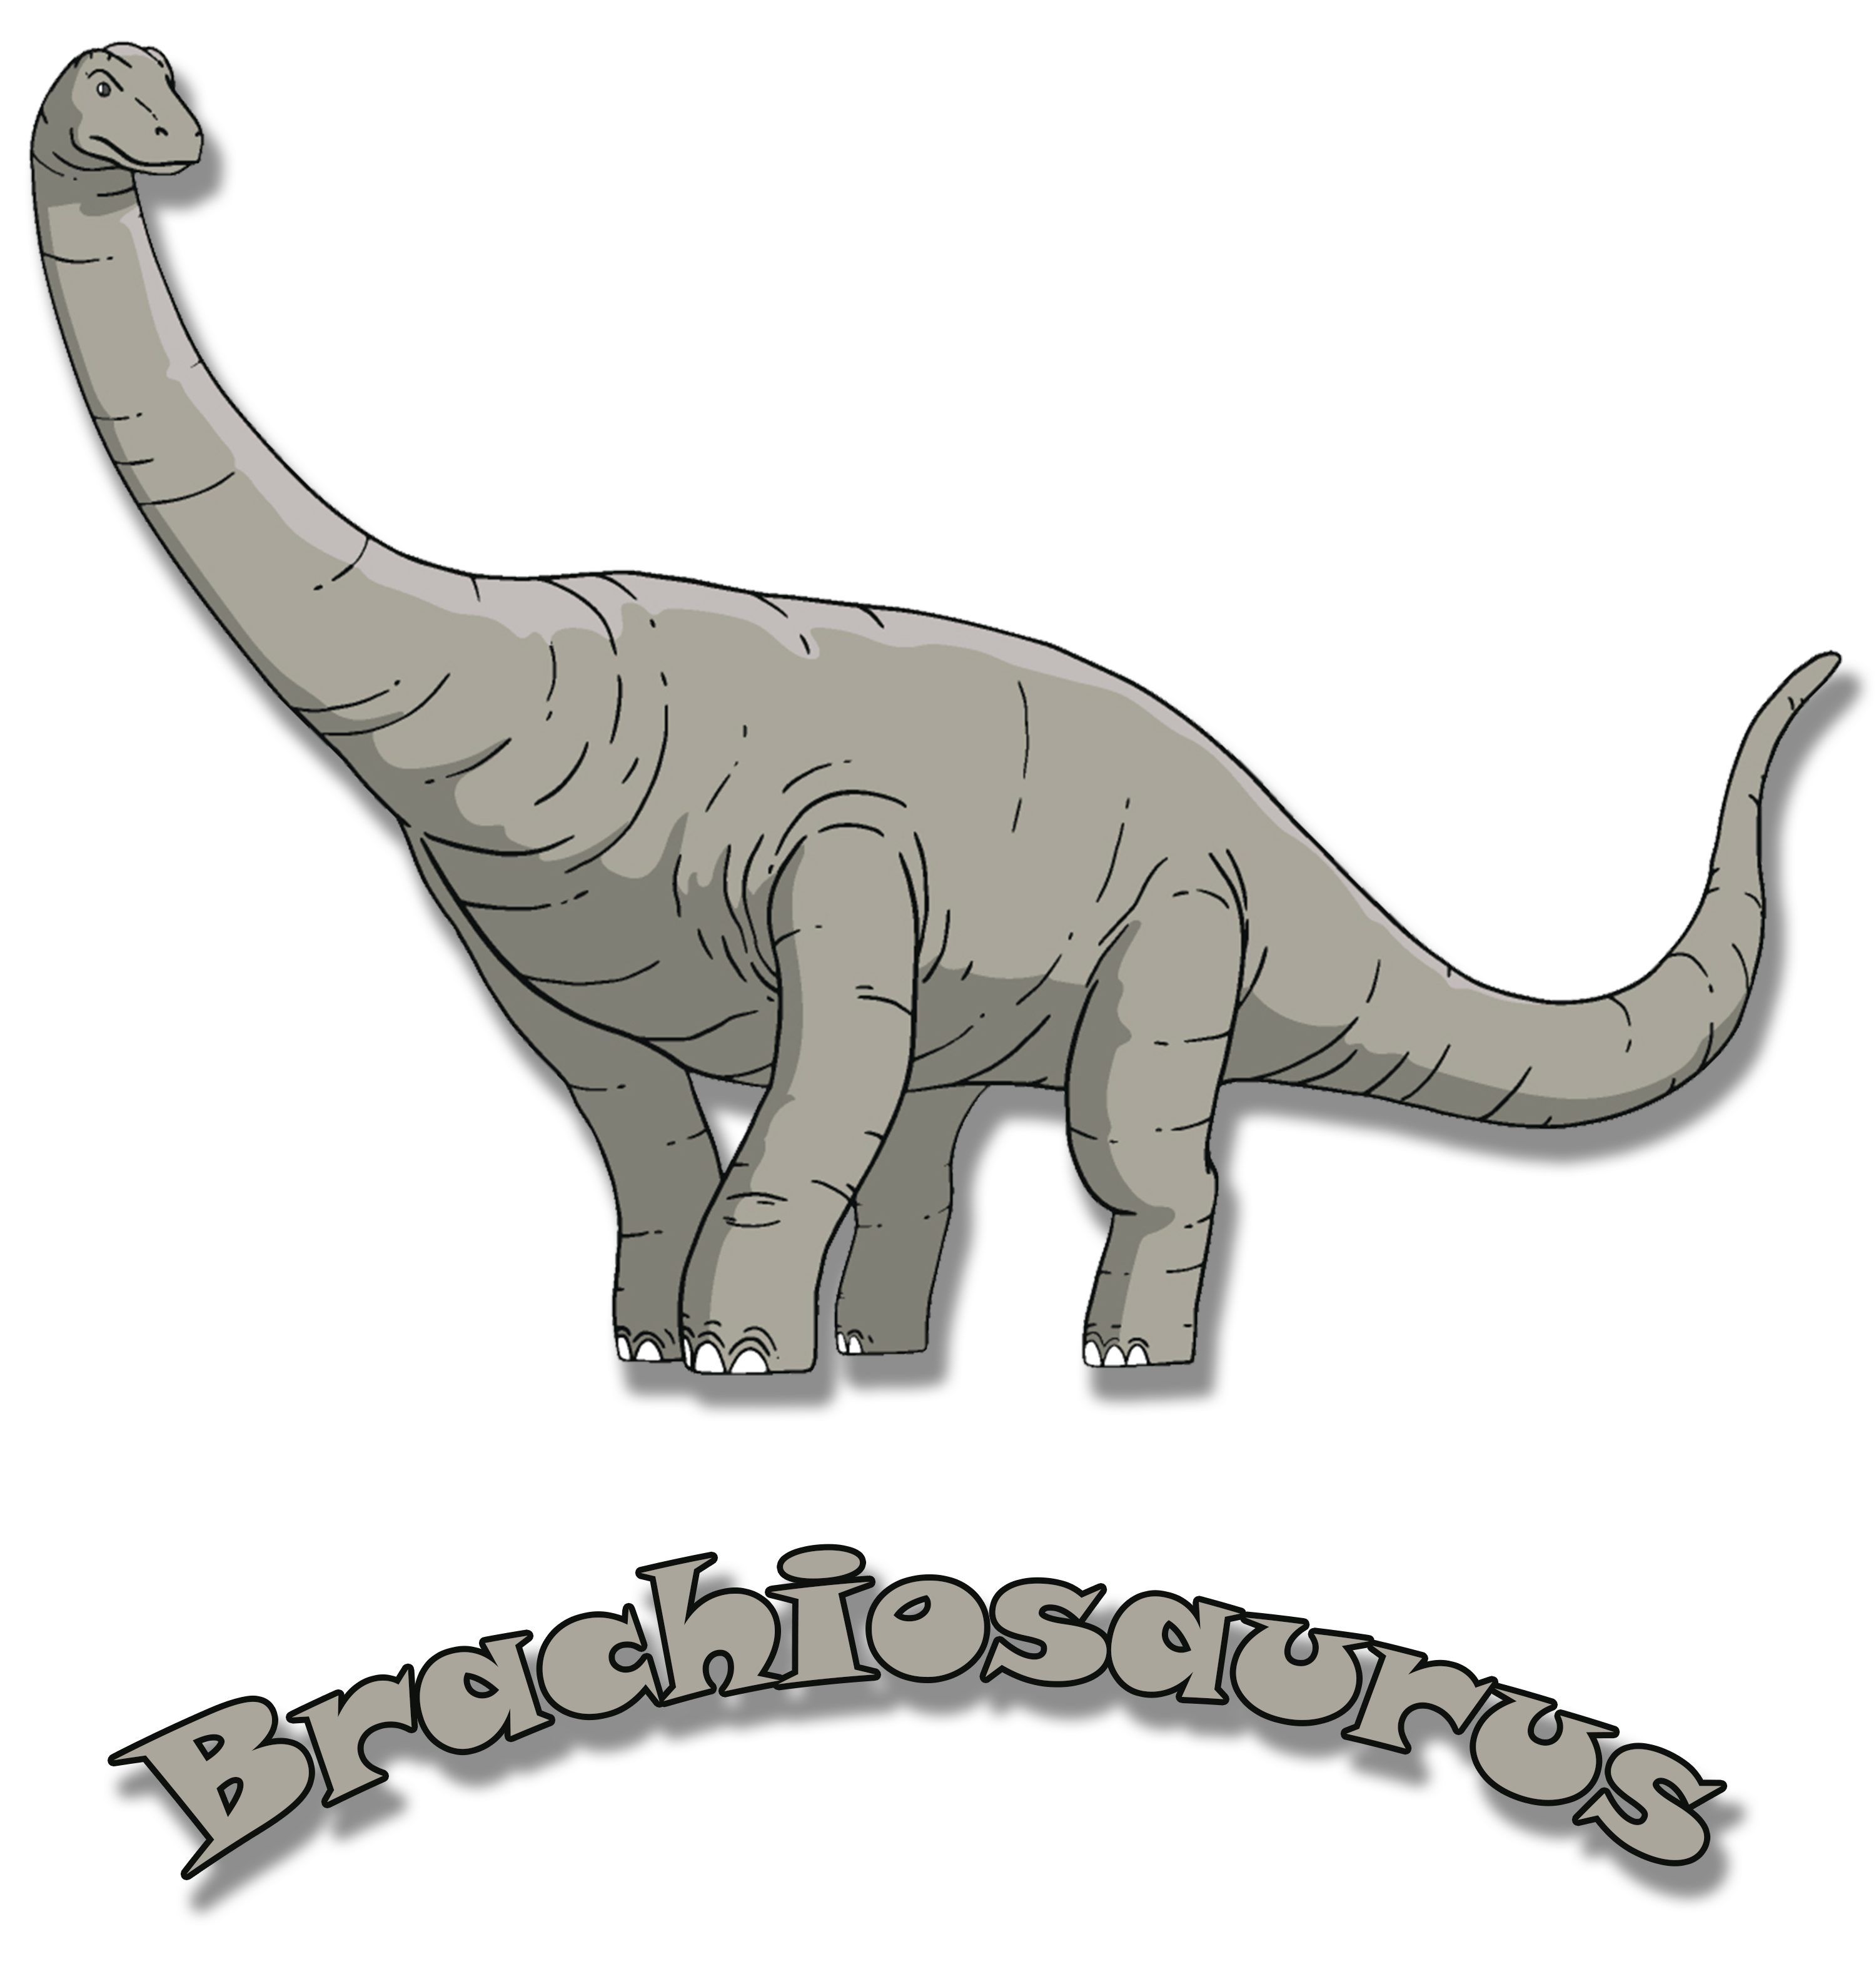 MyDesign24 Print-Shirt bedrucktes Kinder T-Shirt Dino, weiß, Brachiosaurus mit rot, schwarz, Baumwollshirt blau, i66 mit